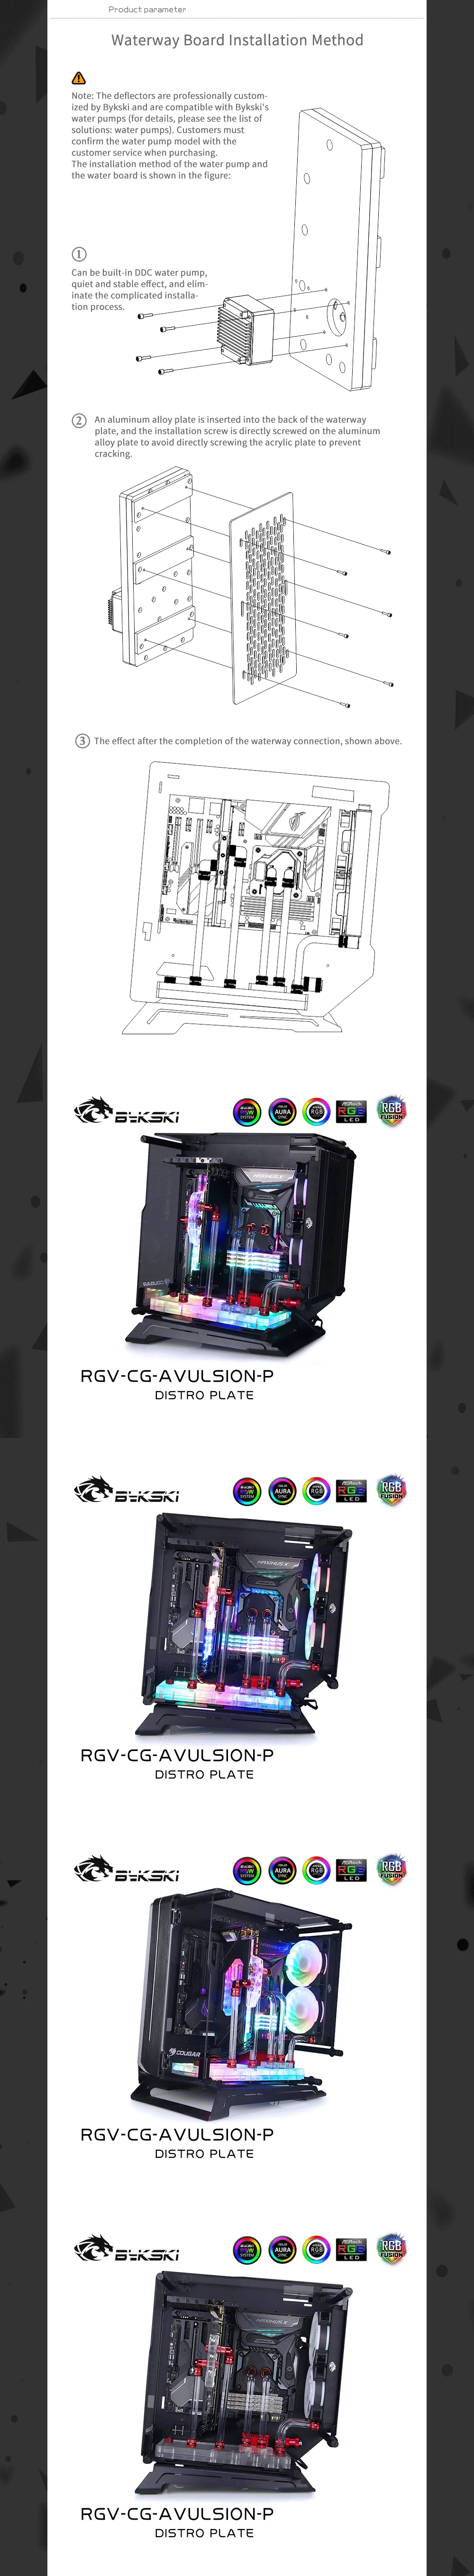 Bykski Waterway Cooling Kit For COUGAR AVULSION Case, 5V ARGB, For Single GPU Building, RGV-CG-AVULSION-P  